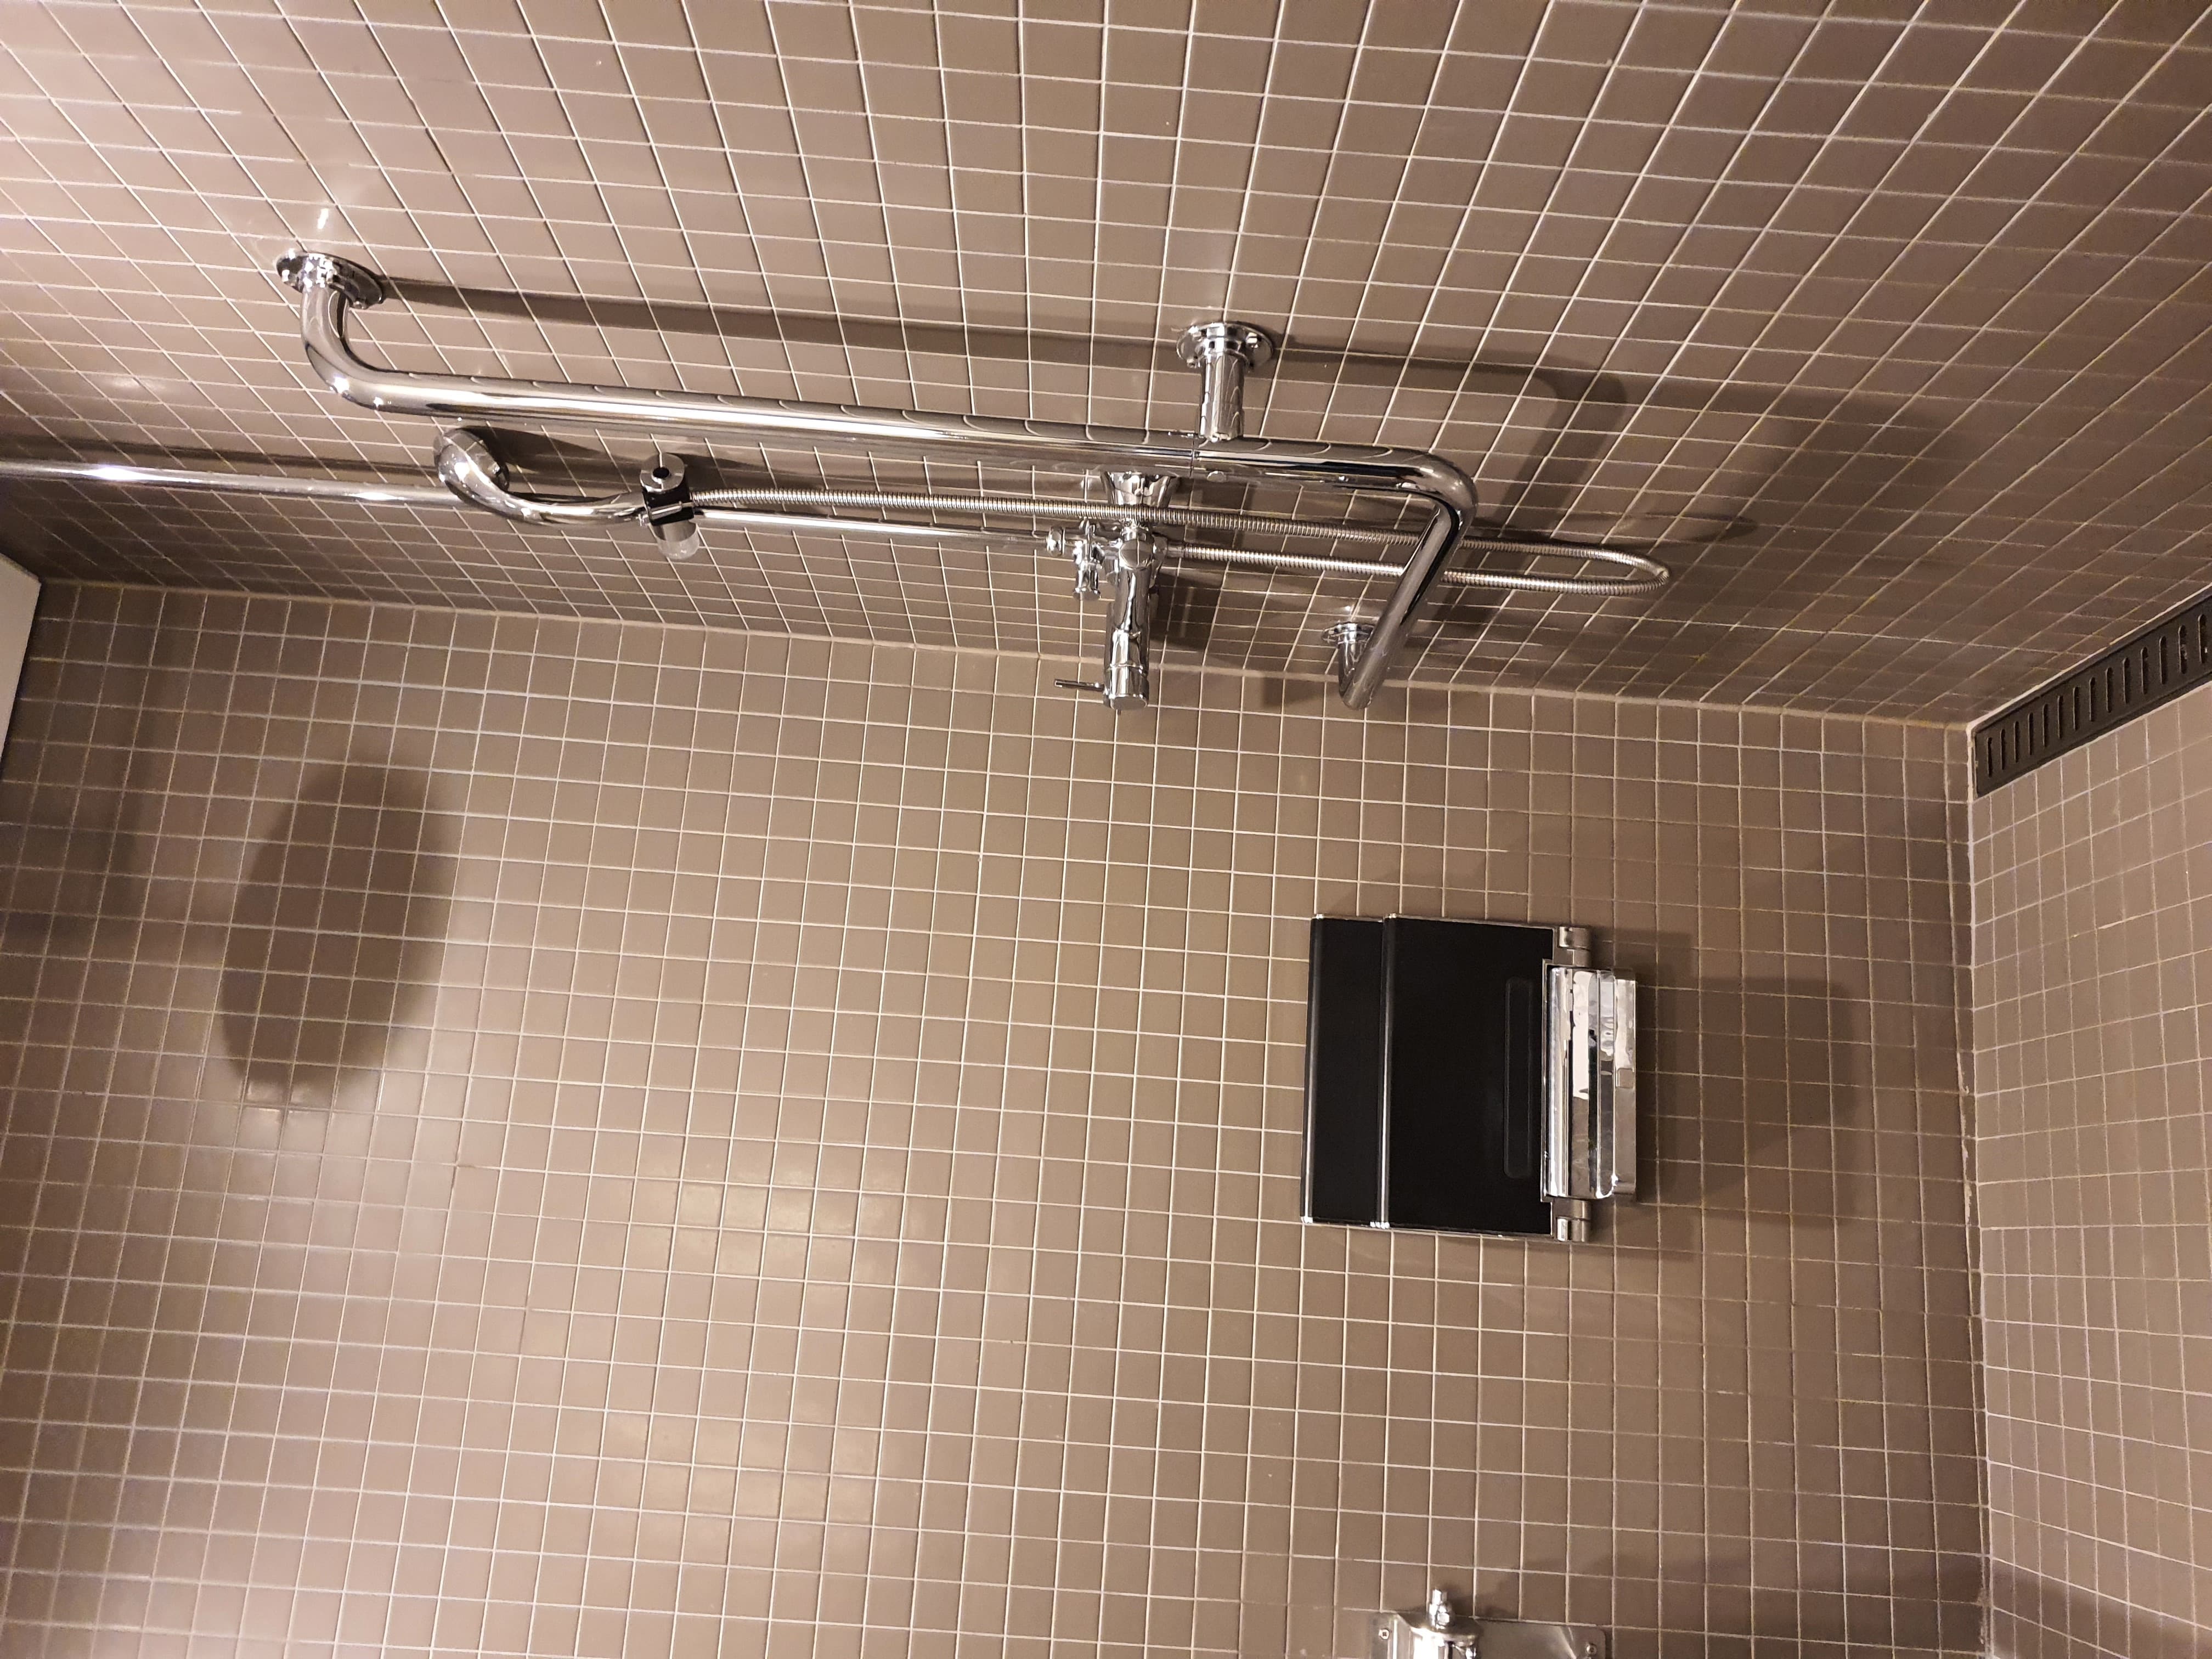 객실 내 화장실0 : 샤워기와 벽걸이형 샤워의자